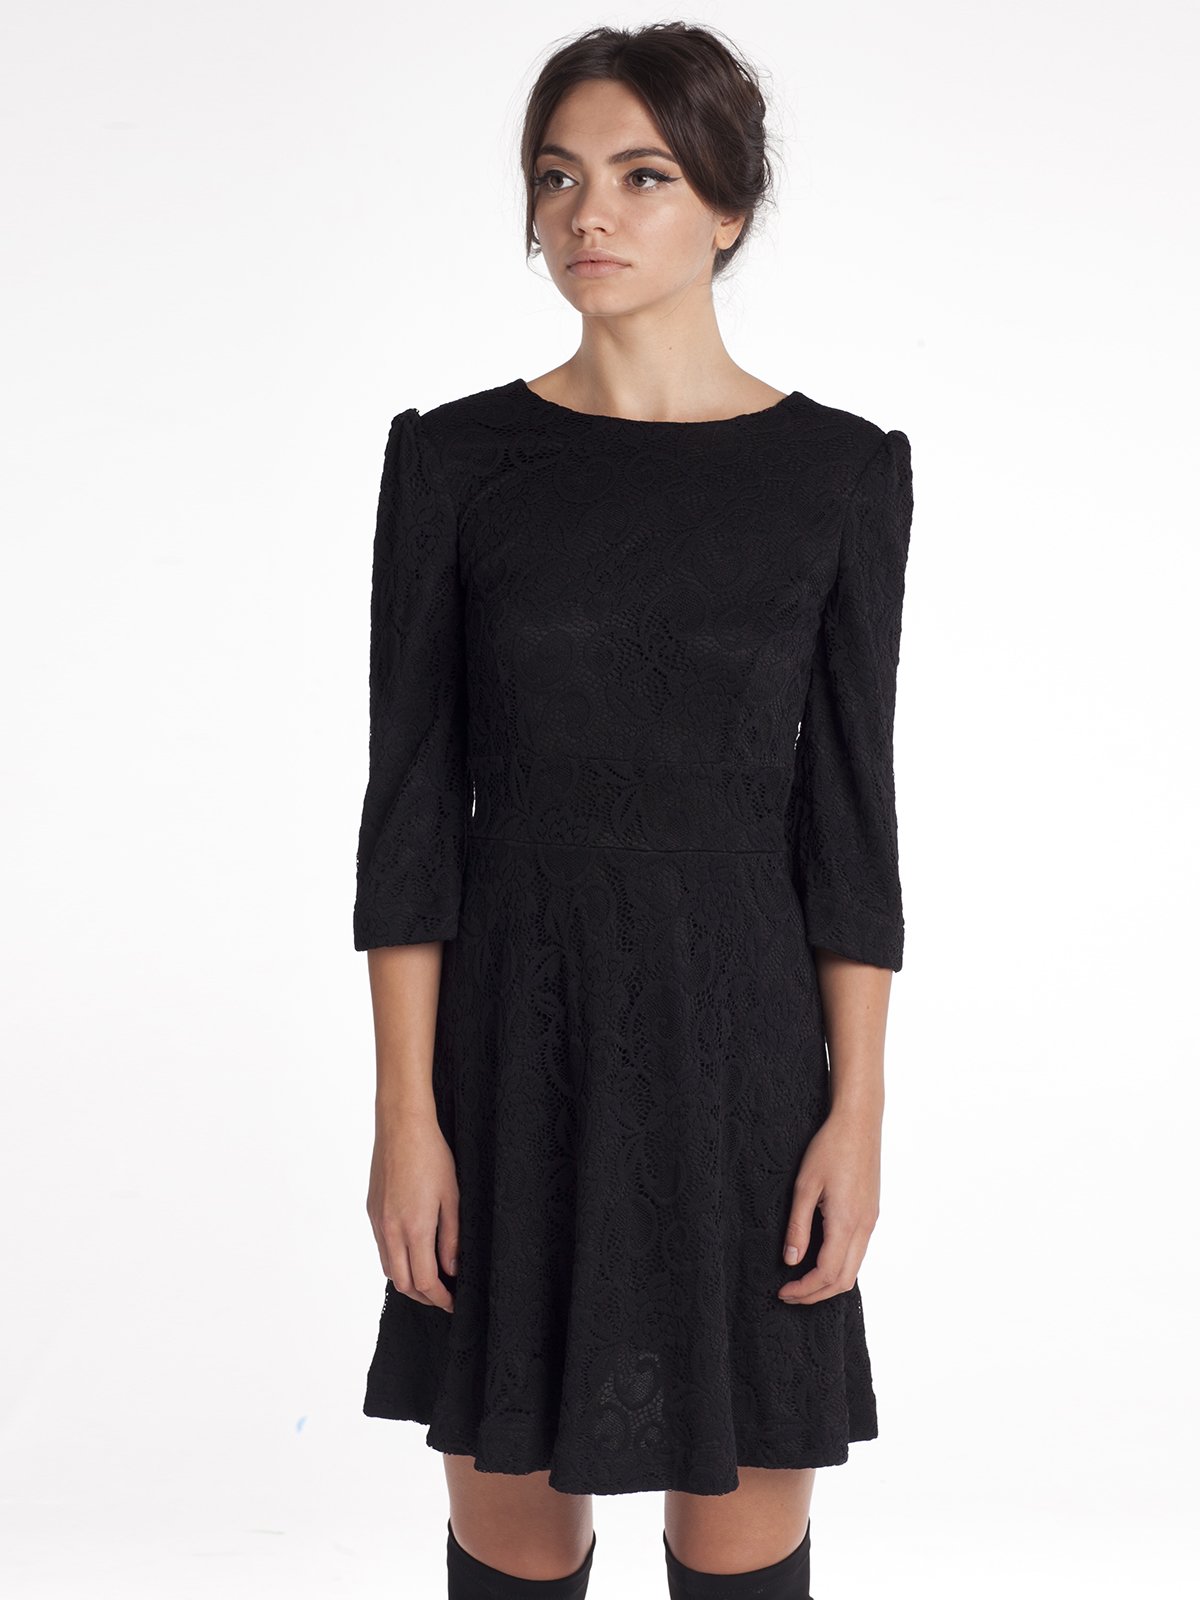 Черное ажурное платье из тонкого кружева с подкладом 0451101512-50